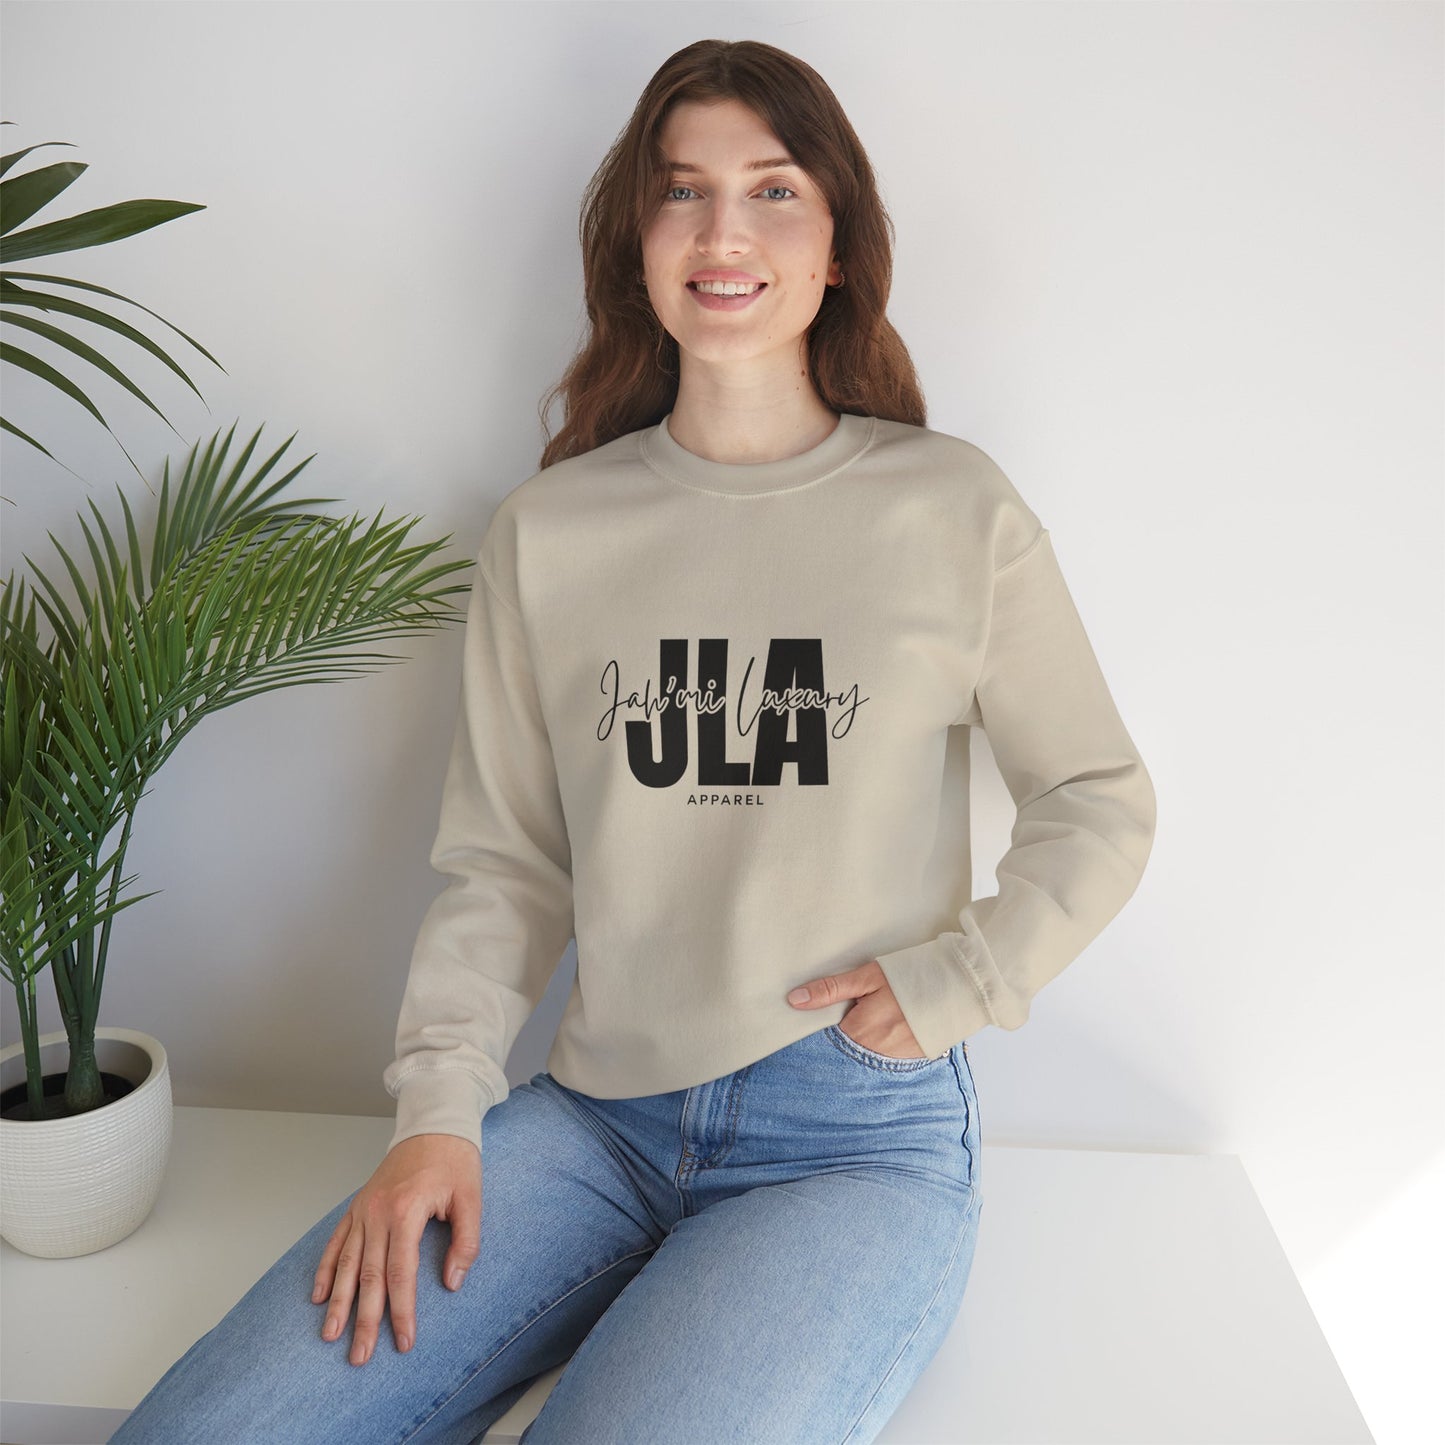 Jah’mi Luxe crewneck sweatshirt